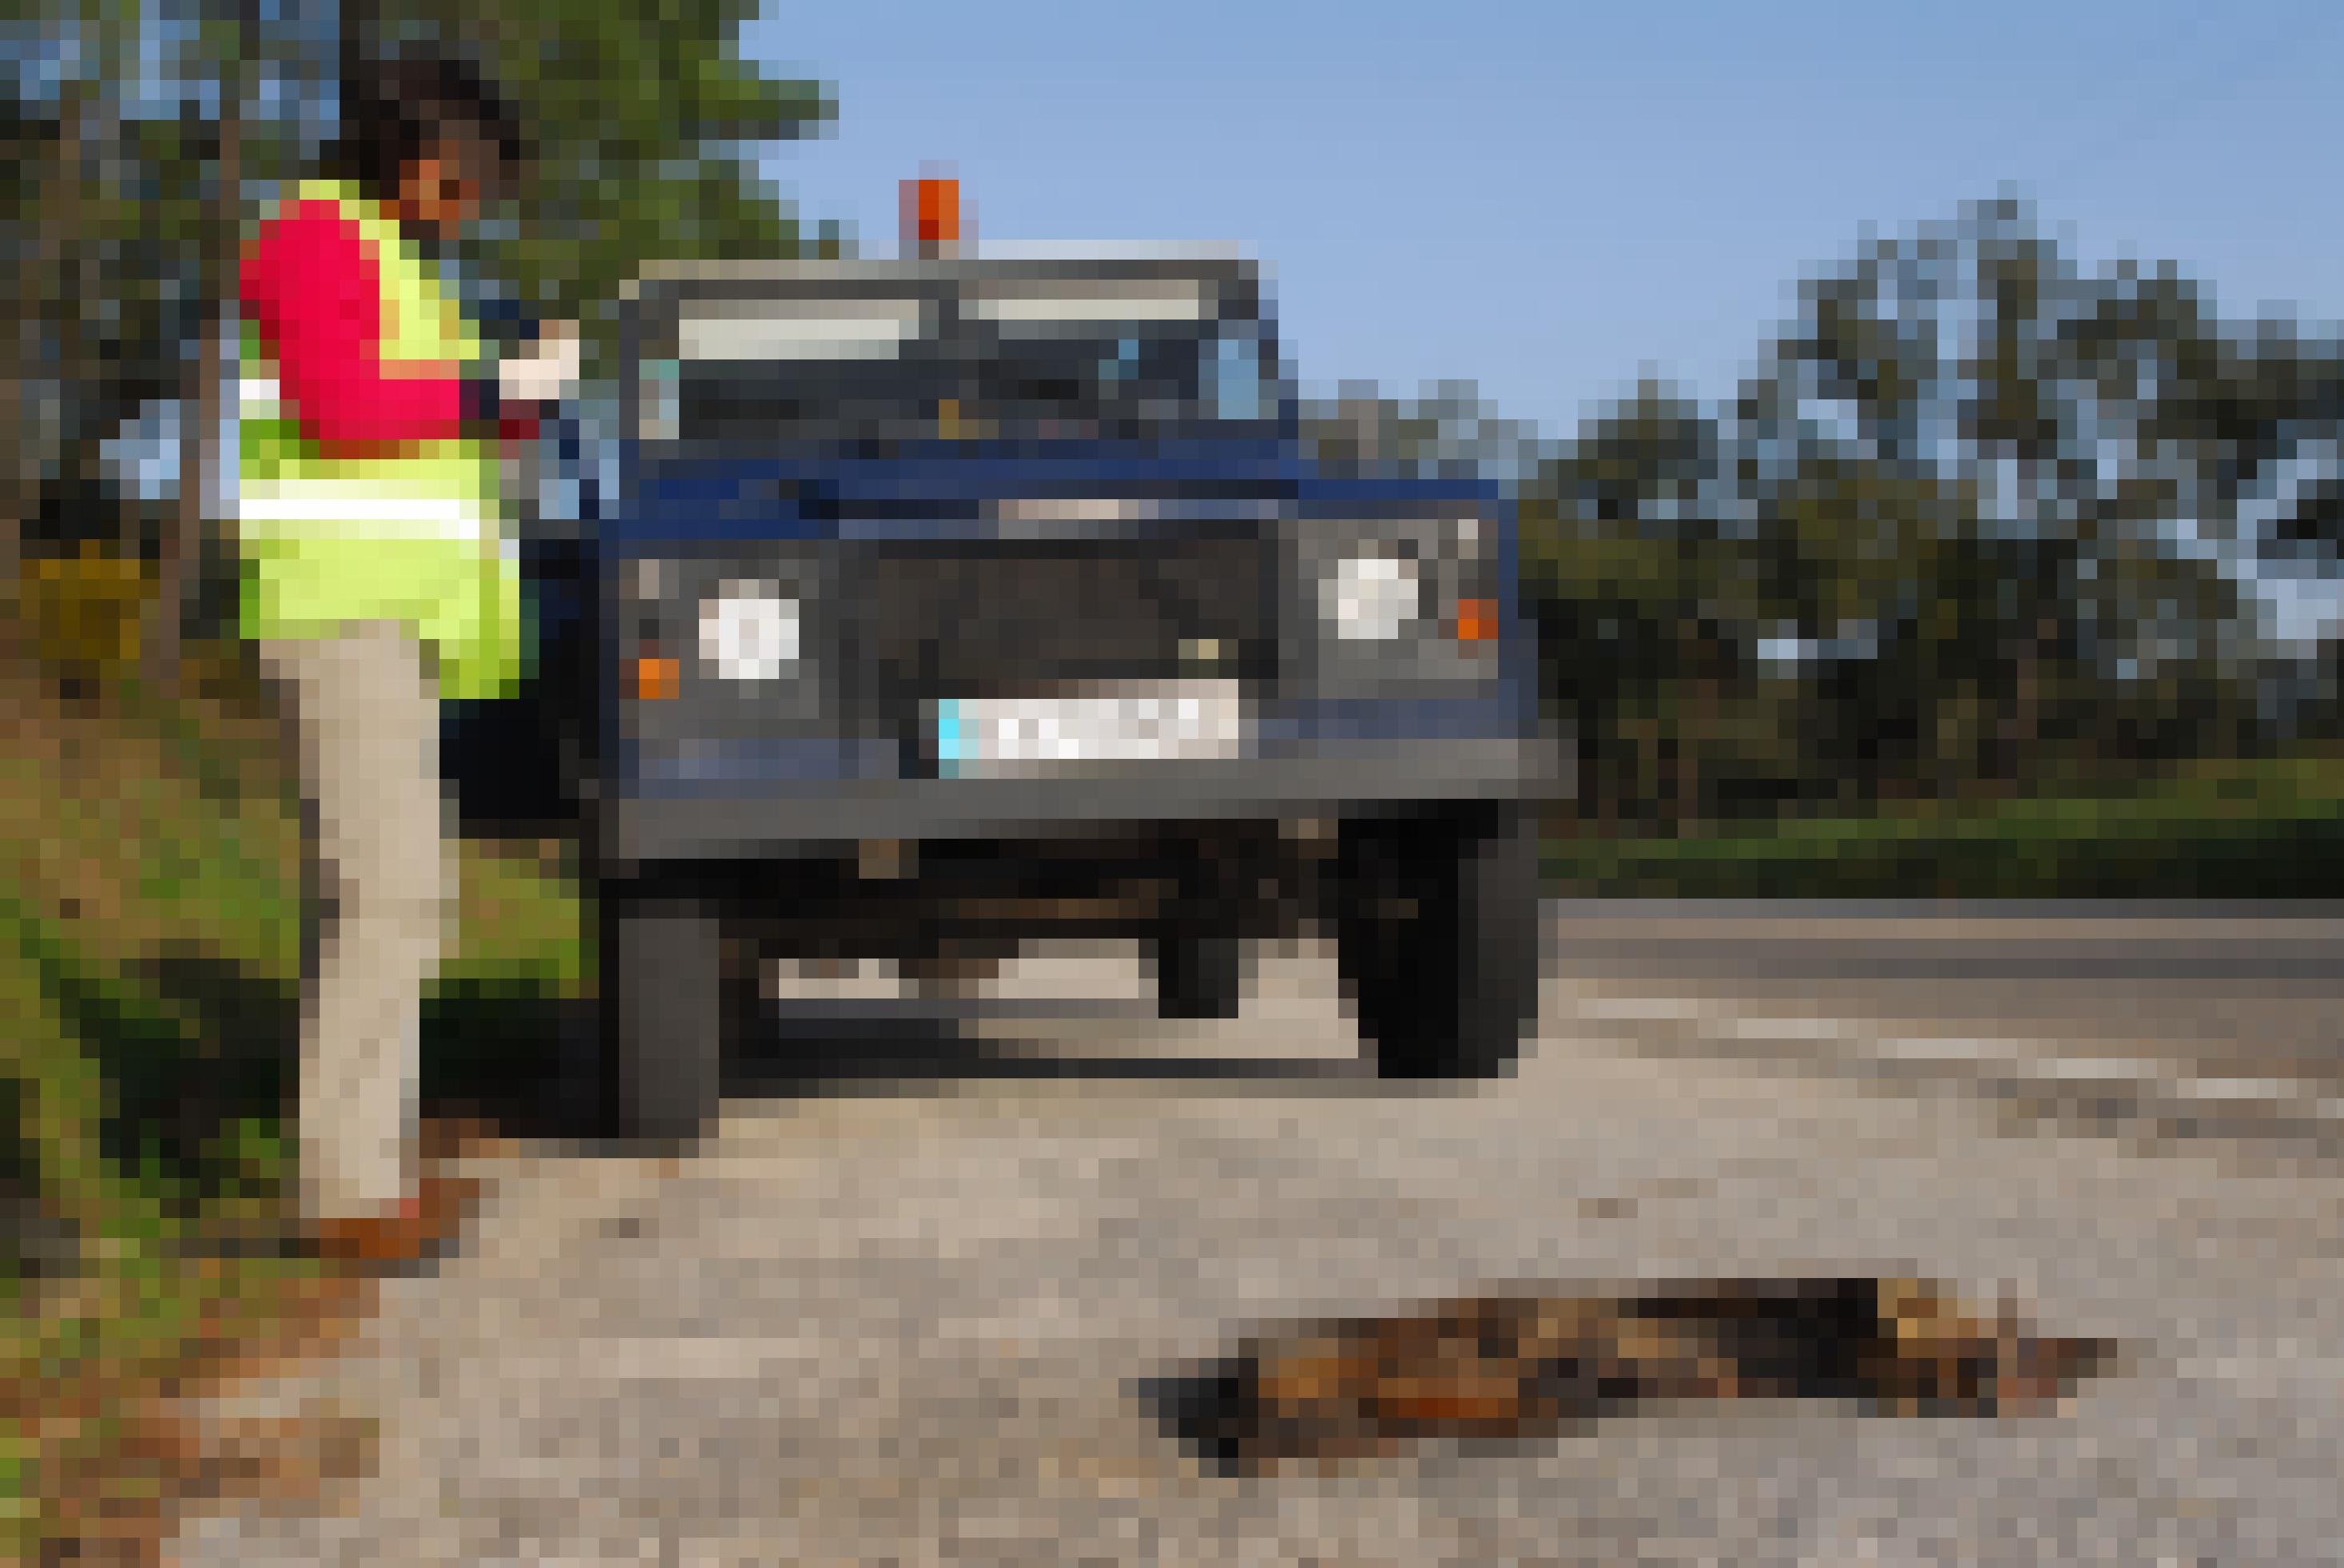 Studienautorin Clara Grilo steht neben einem blauen Landrover in einer orangen Warnweste am Straßenrand und steckt eine Probe in eine kleine Tüte. Vor dem Wagen liegt ein überfahrenes Säugetier, wahrscheinlich ein Schakal.